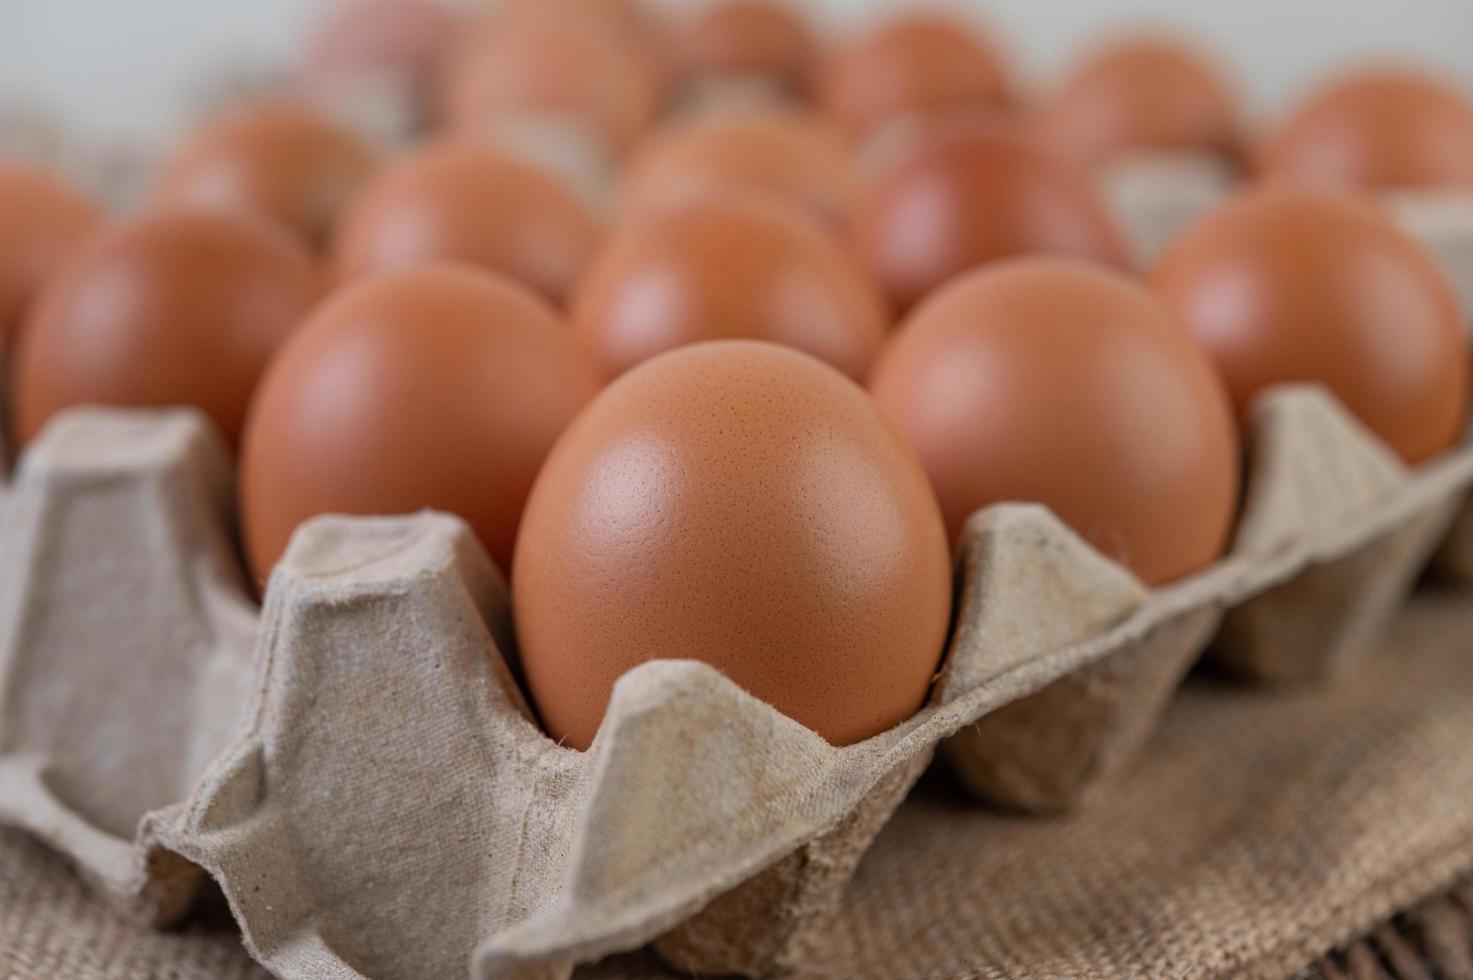 œufs de poule crus biologiques photo